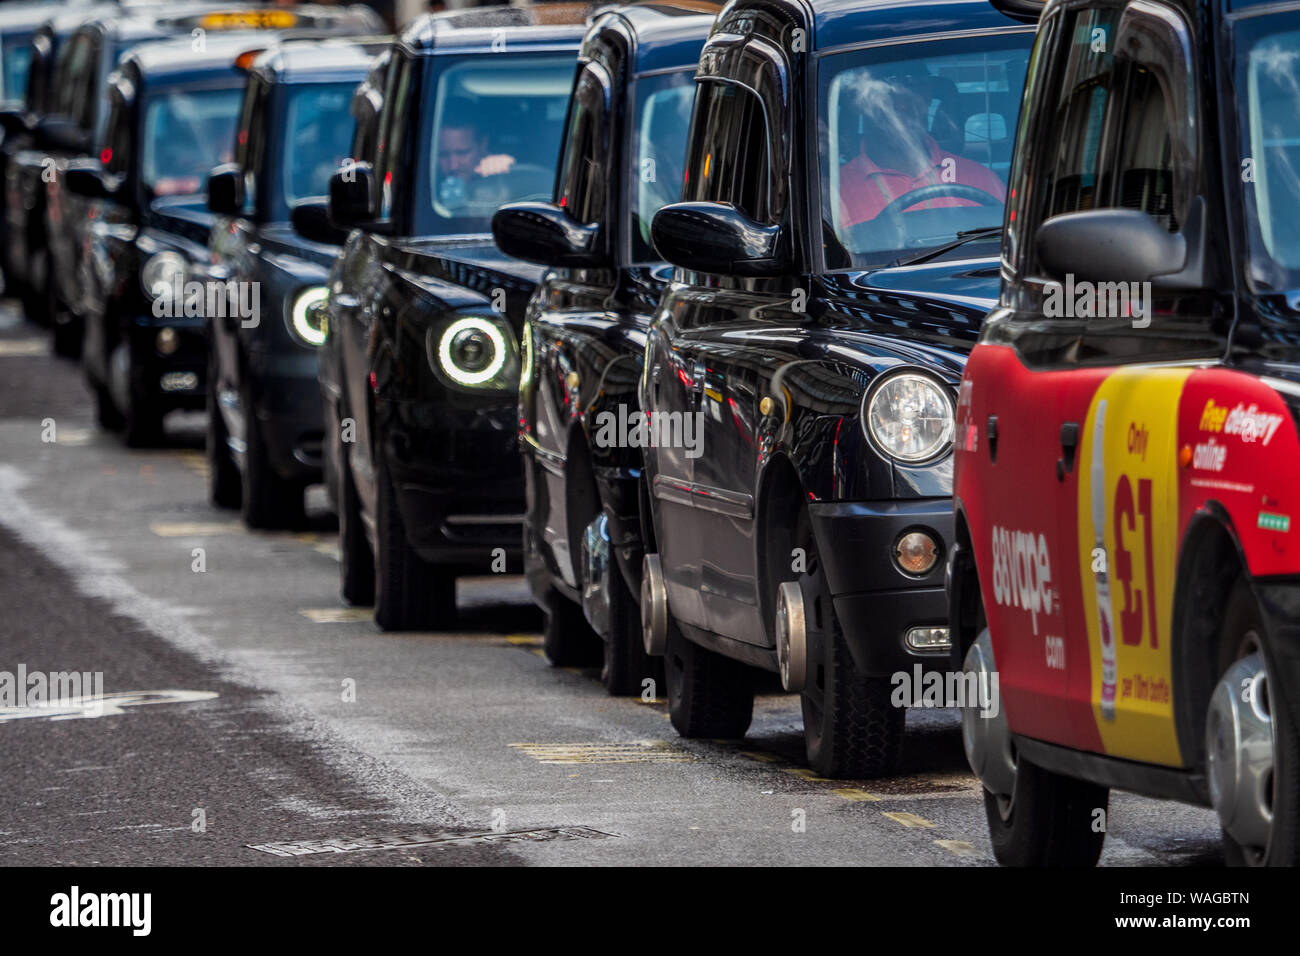 Londra Taxi, Taxi di Londra, London Taxi Coda, Londra Taxi linea. Black Cabs attendere al di fuori di una stazione nel centro di Londra. Foto Stock